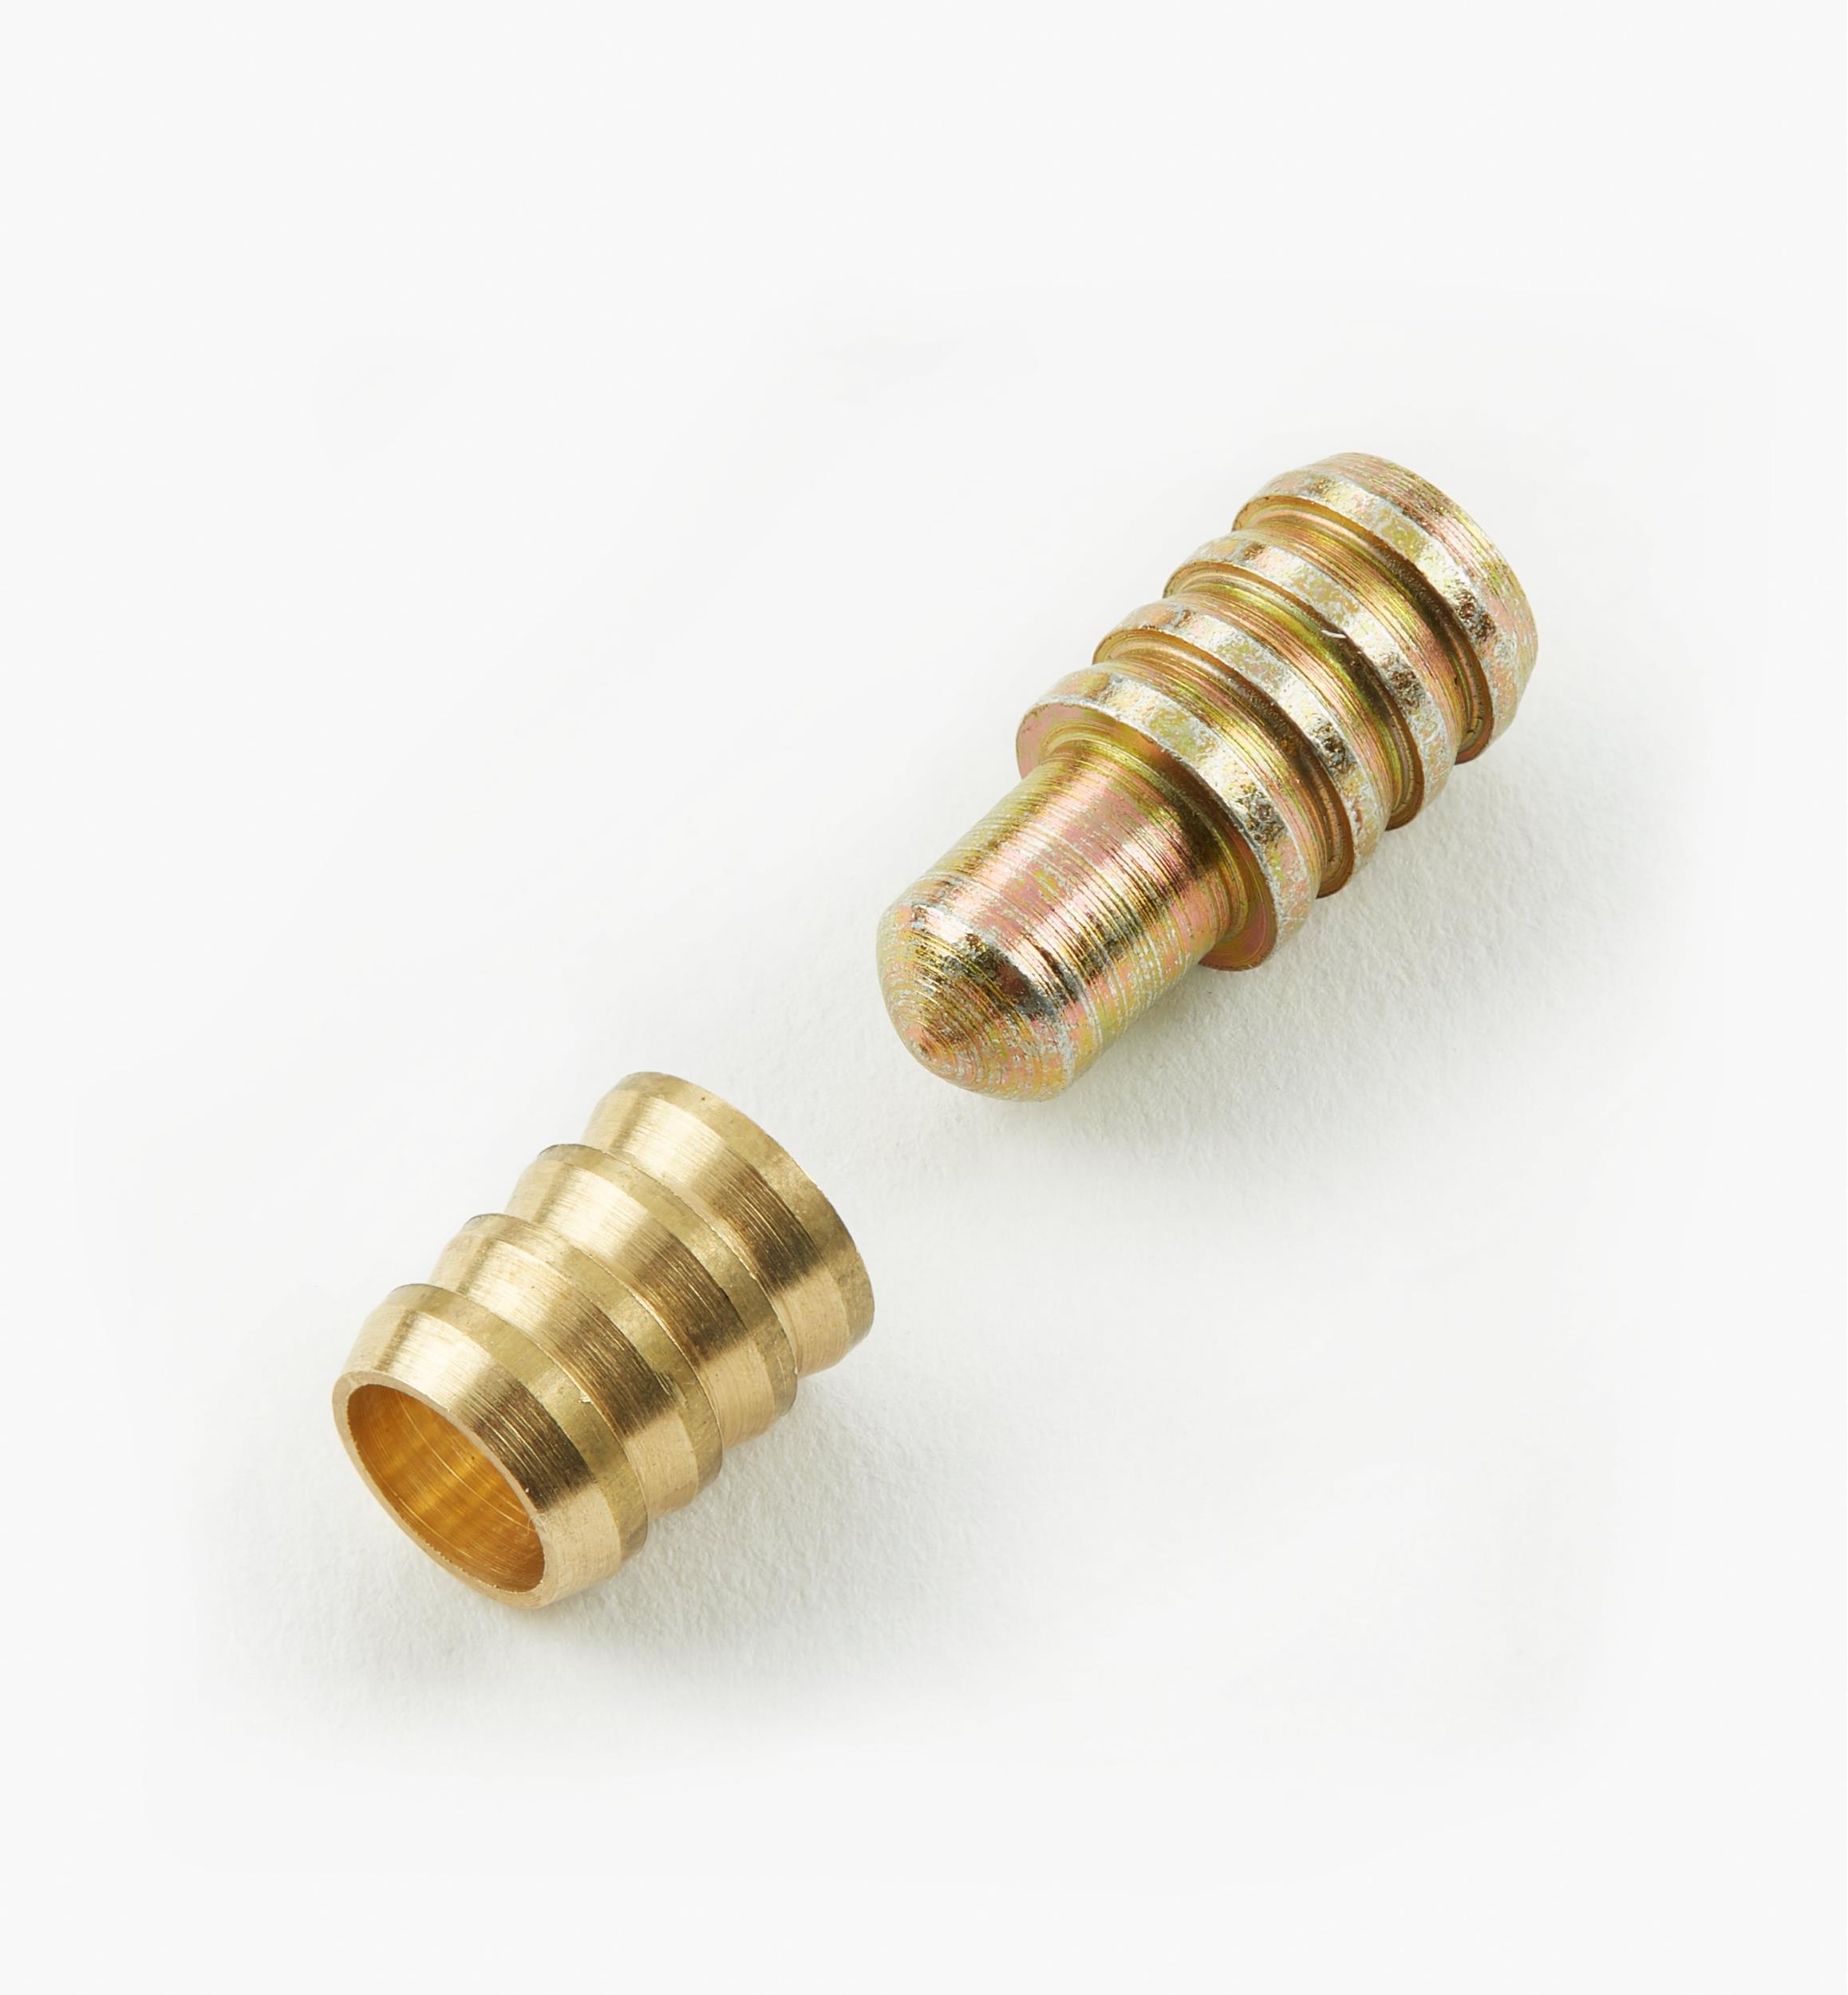 50pcs Gold Zinc Alloy Table Leaf Dowel Aligner Pin Sets Alignment Pins 